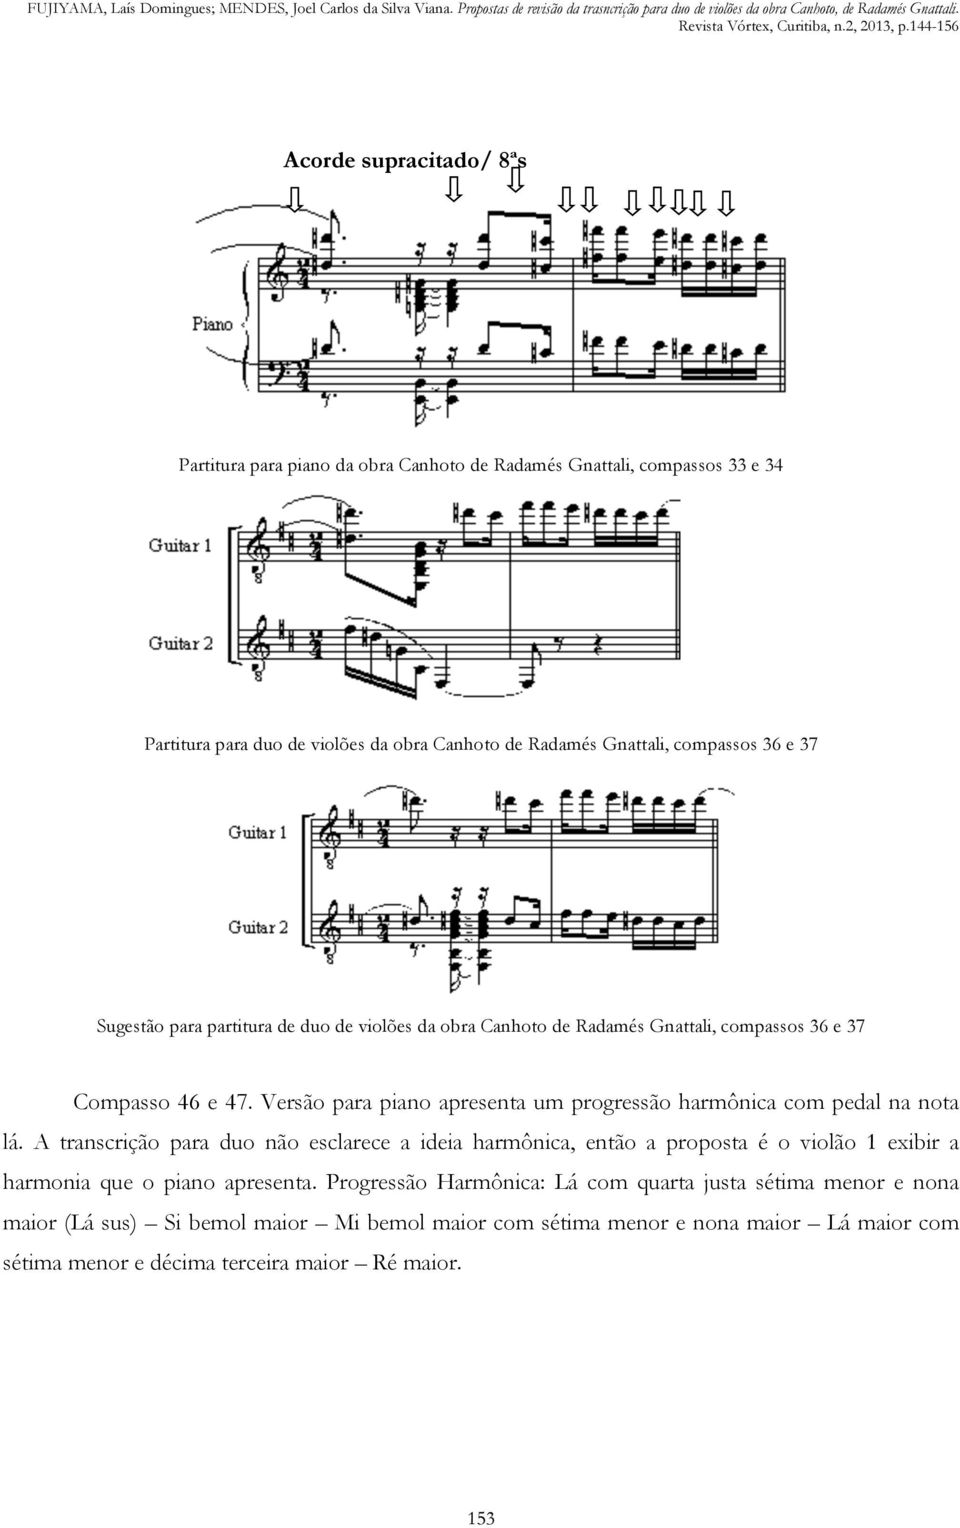 Versão para piano apresenta um progressão harmônica com pedal na nota lá.